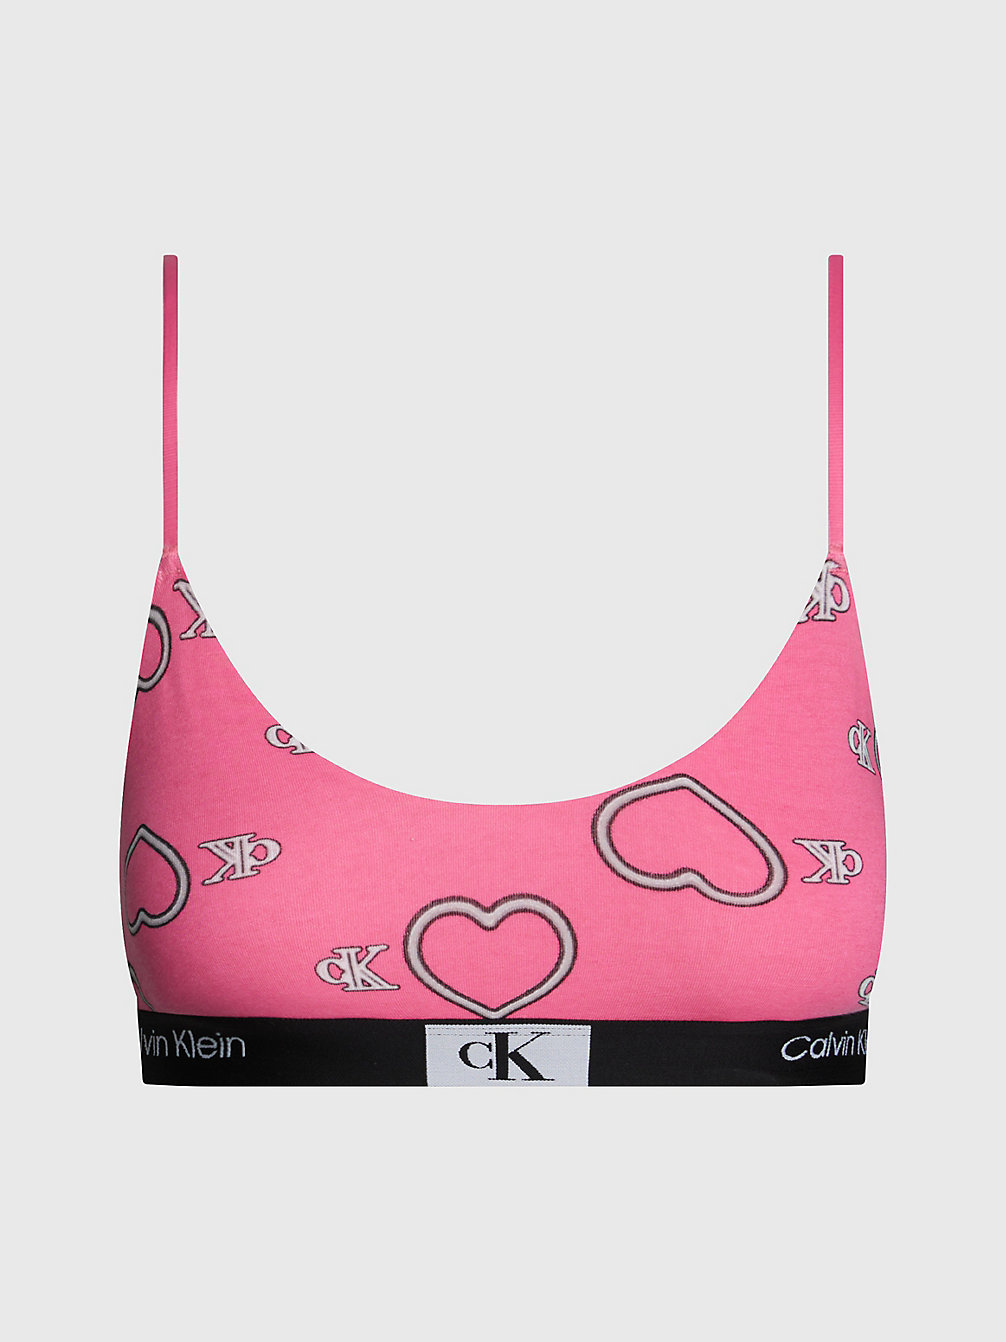 NEON HEART_CARMINE ROSE String-Bralette - Ck96 undefined Damen Calvin Klein